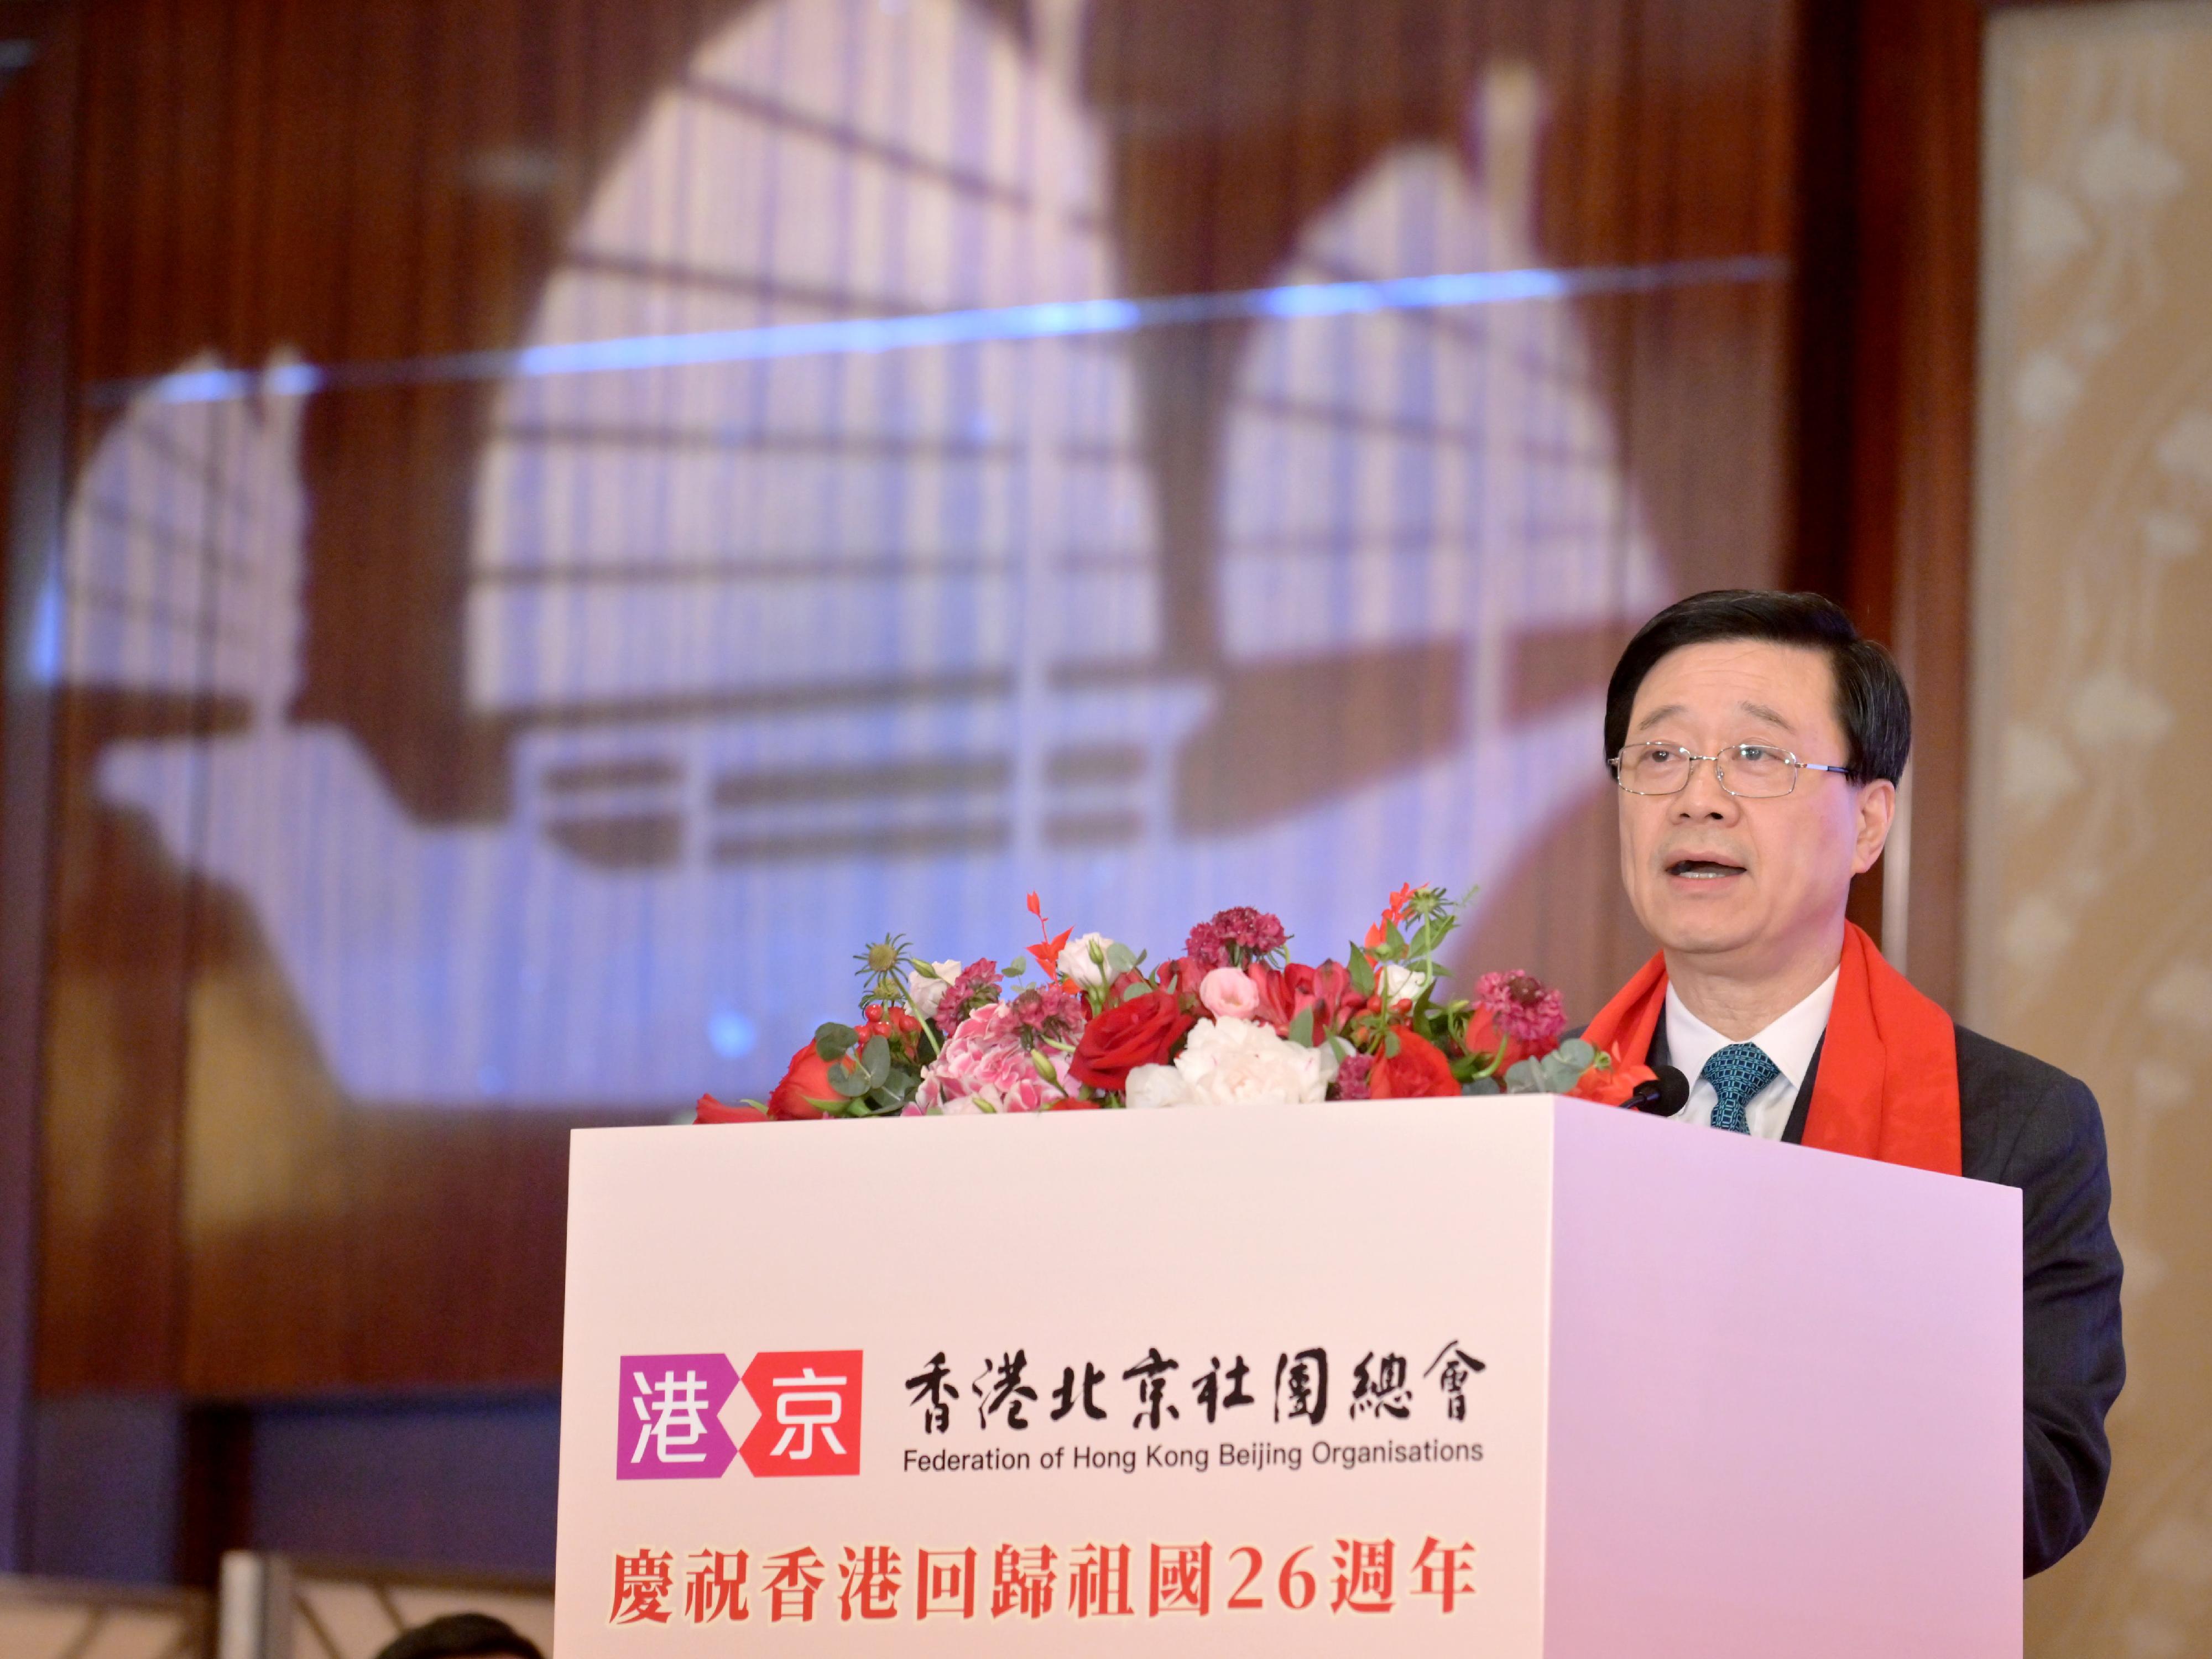 行政長官李家超今日（六月二十八日）在慶祝香港回歸祖國26周年暨香港北京社團總會成立暨第一屆理事會就職典禮致辭。